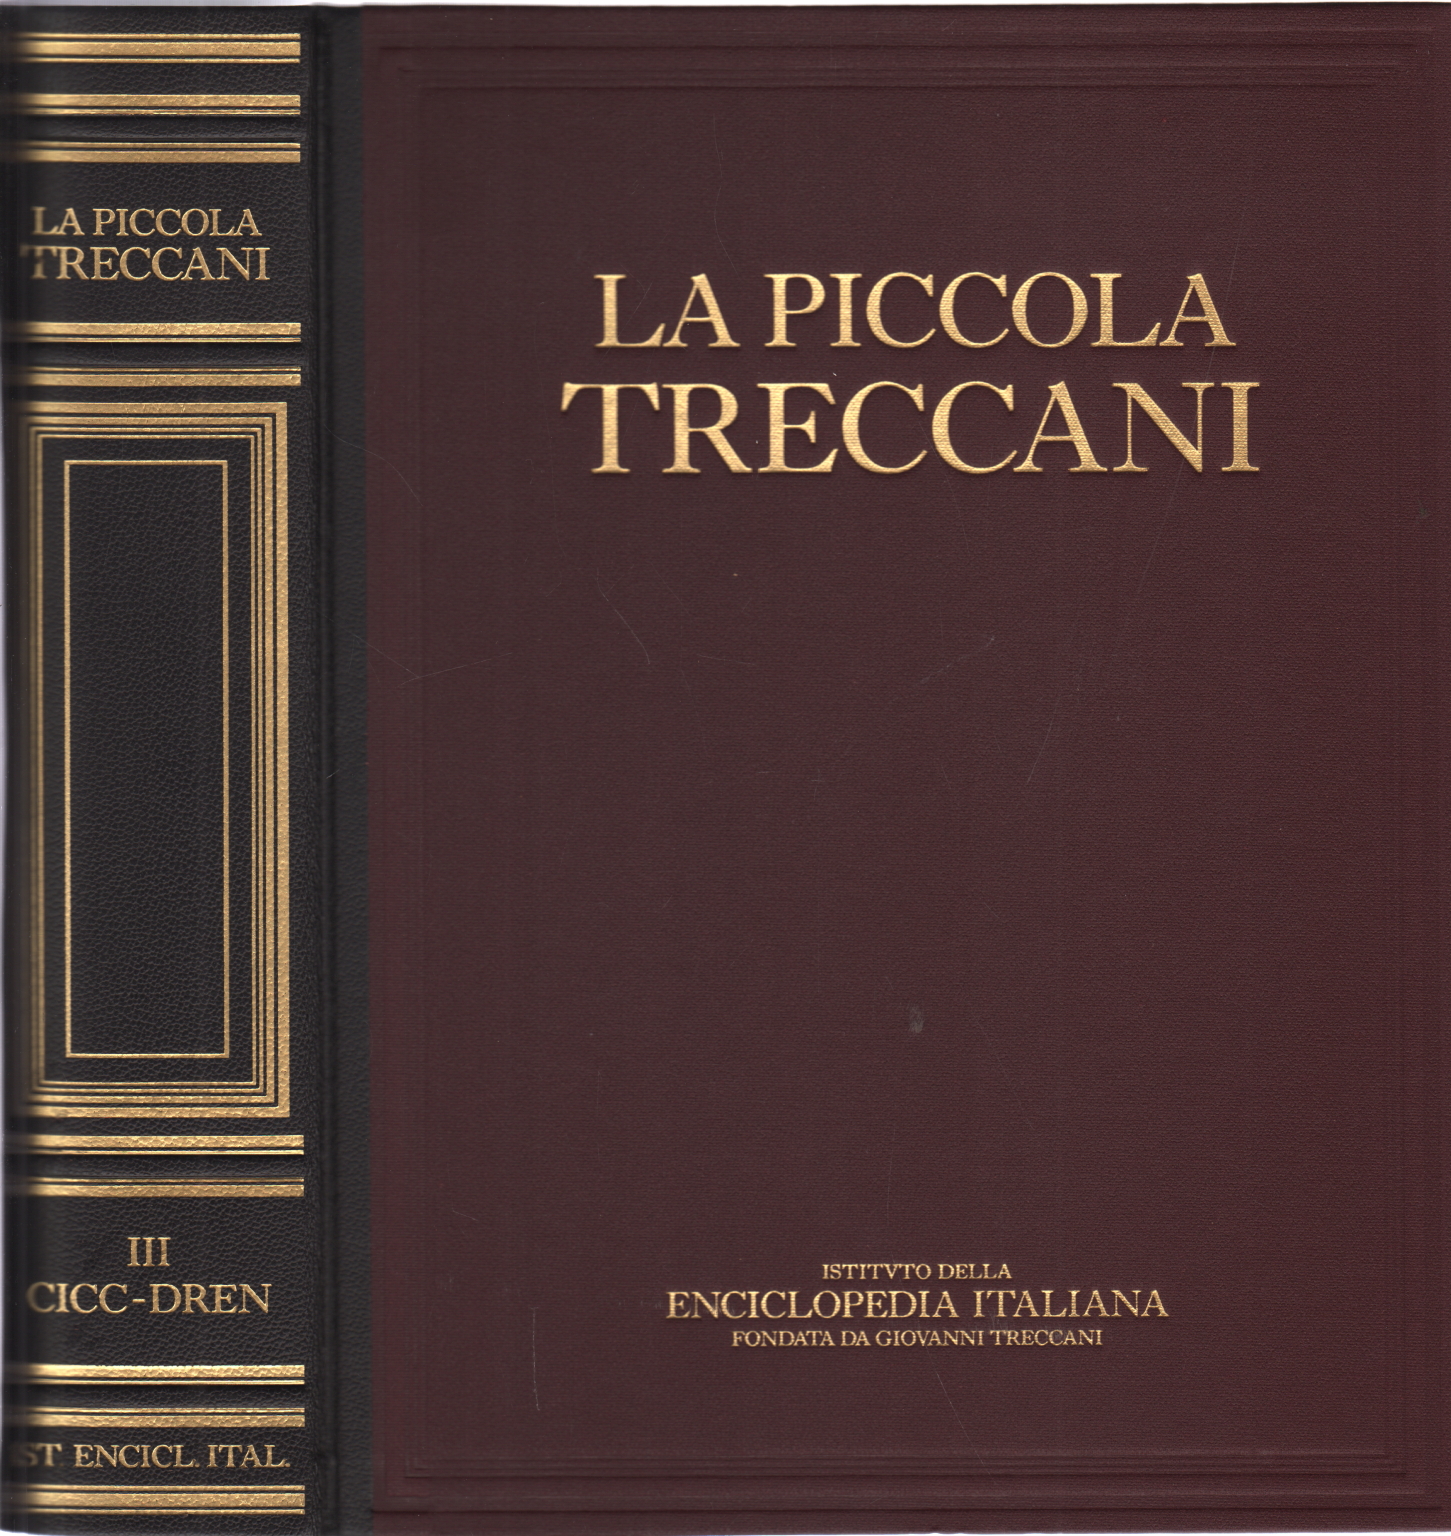 El pequeño Treccani III Cicc-Dren